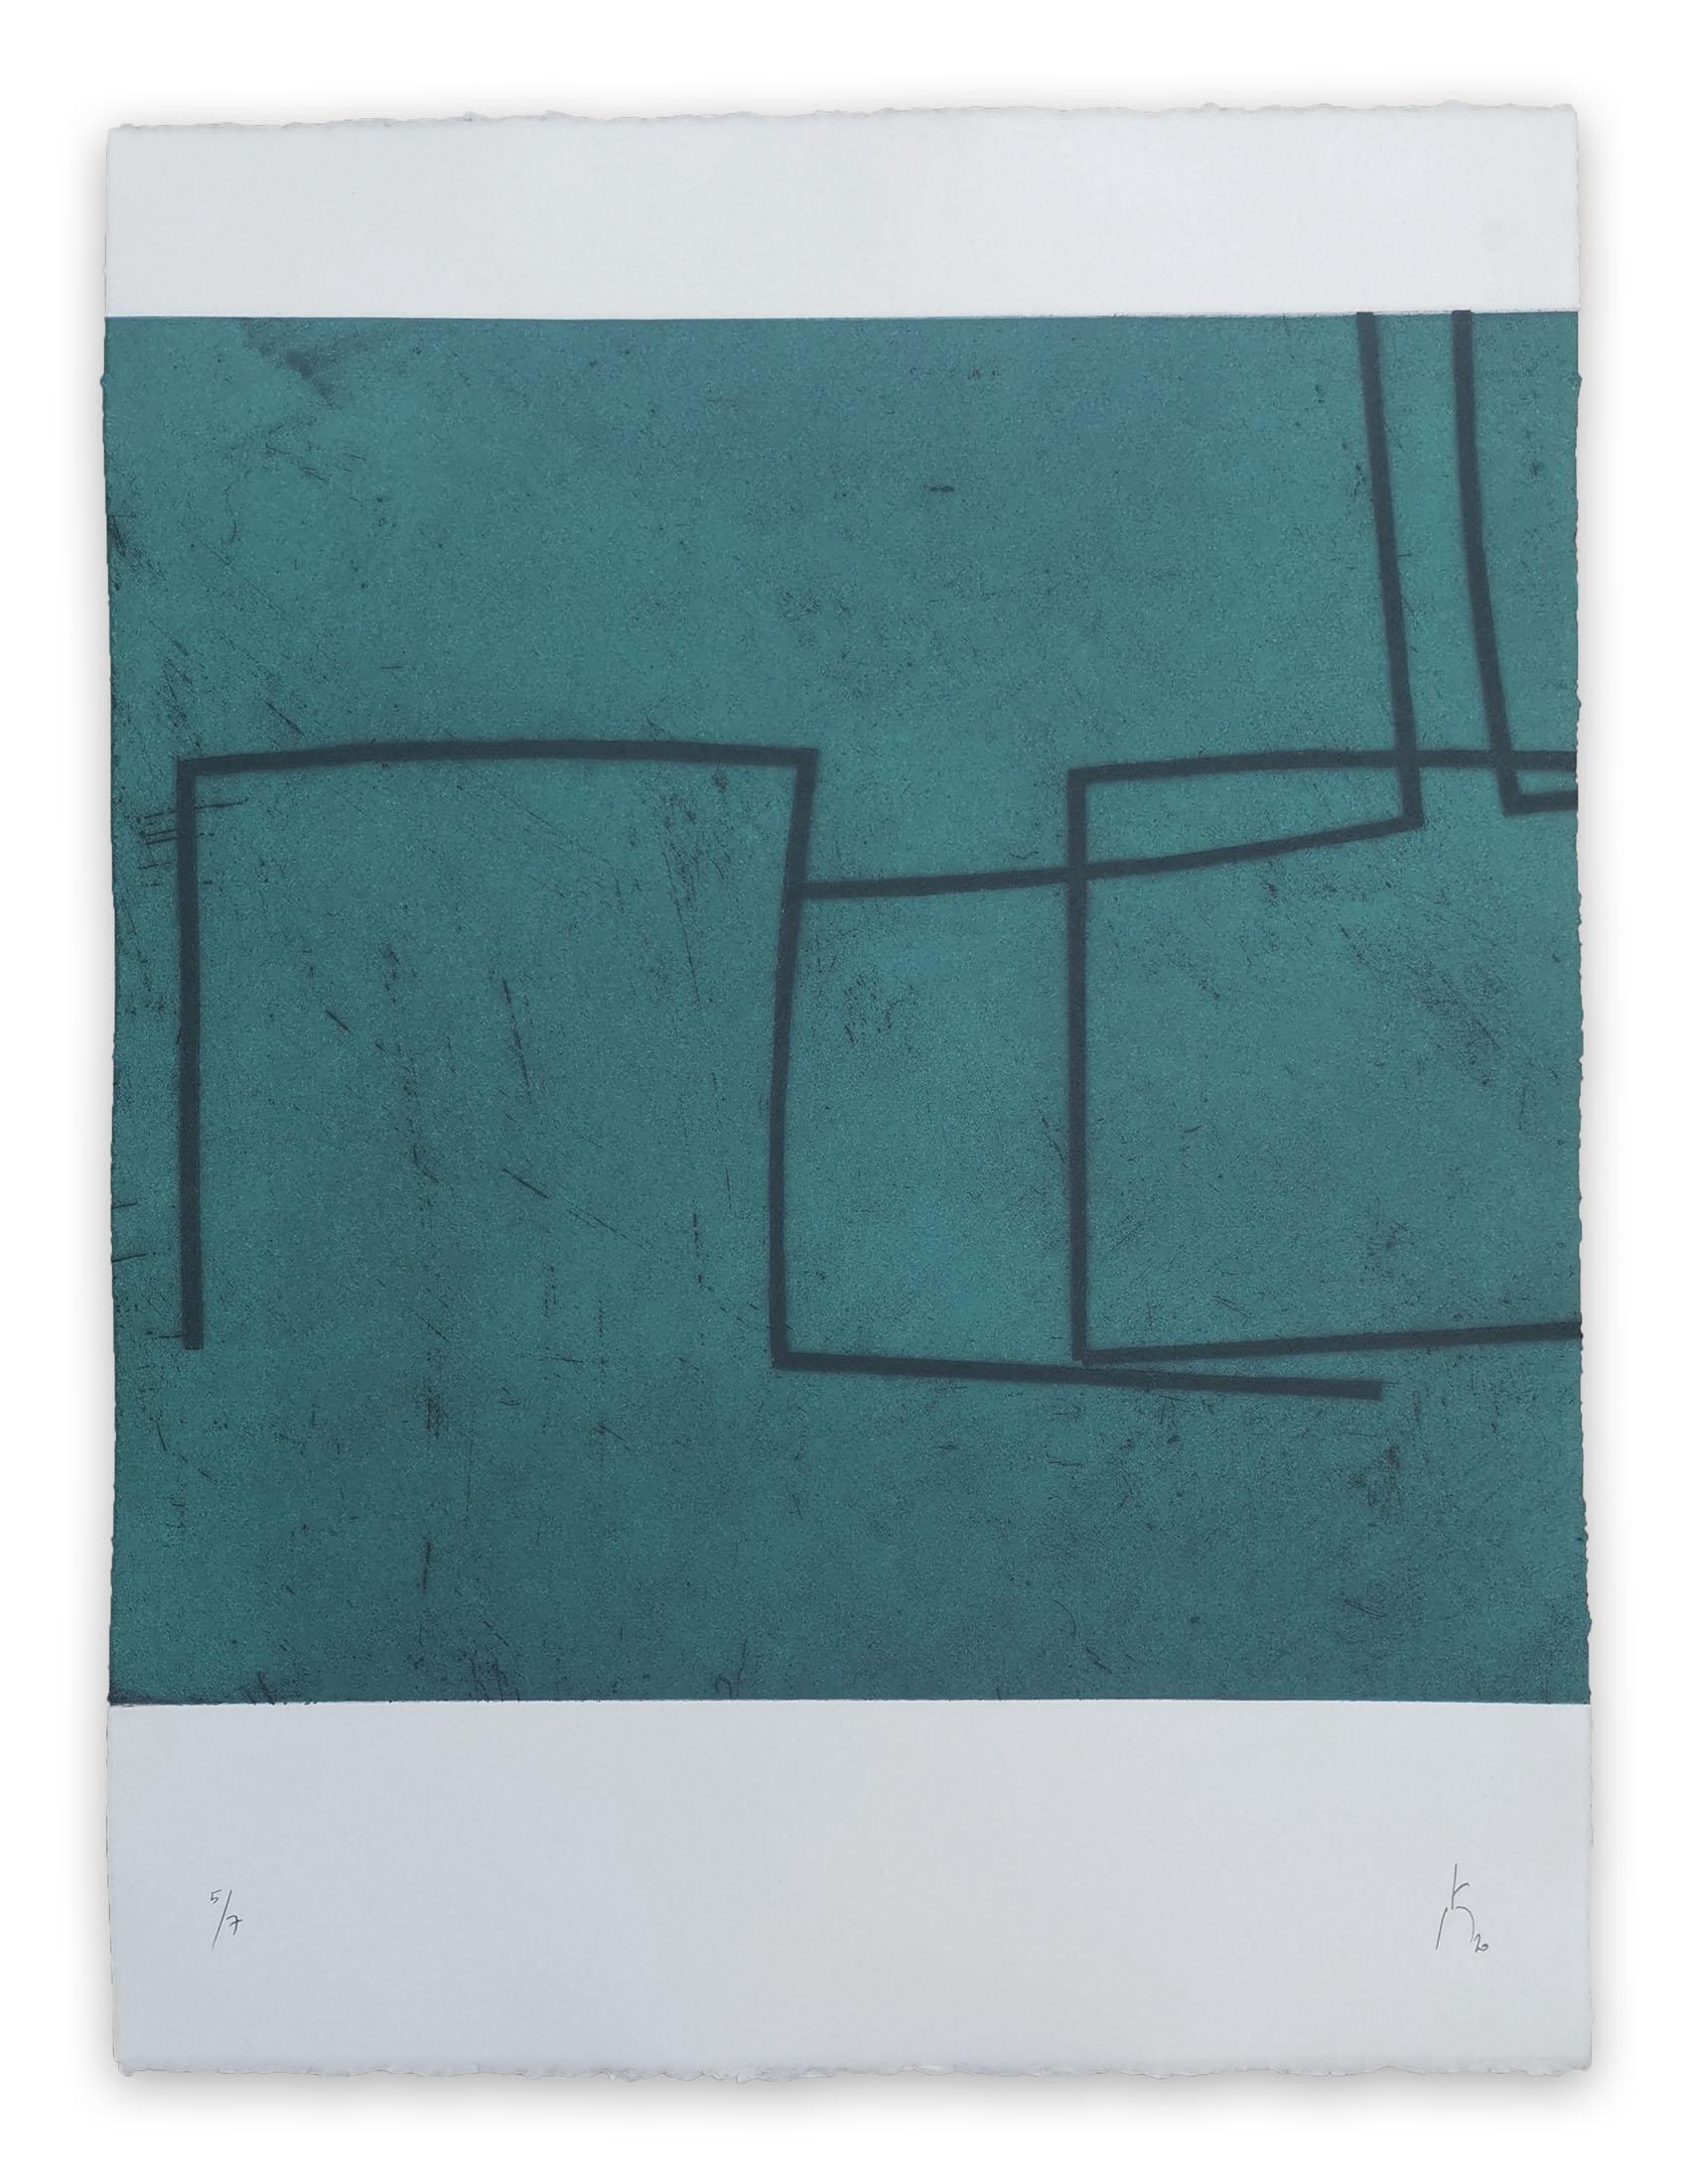 Pierre Muckensturm Abstract Print - 203R0944